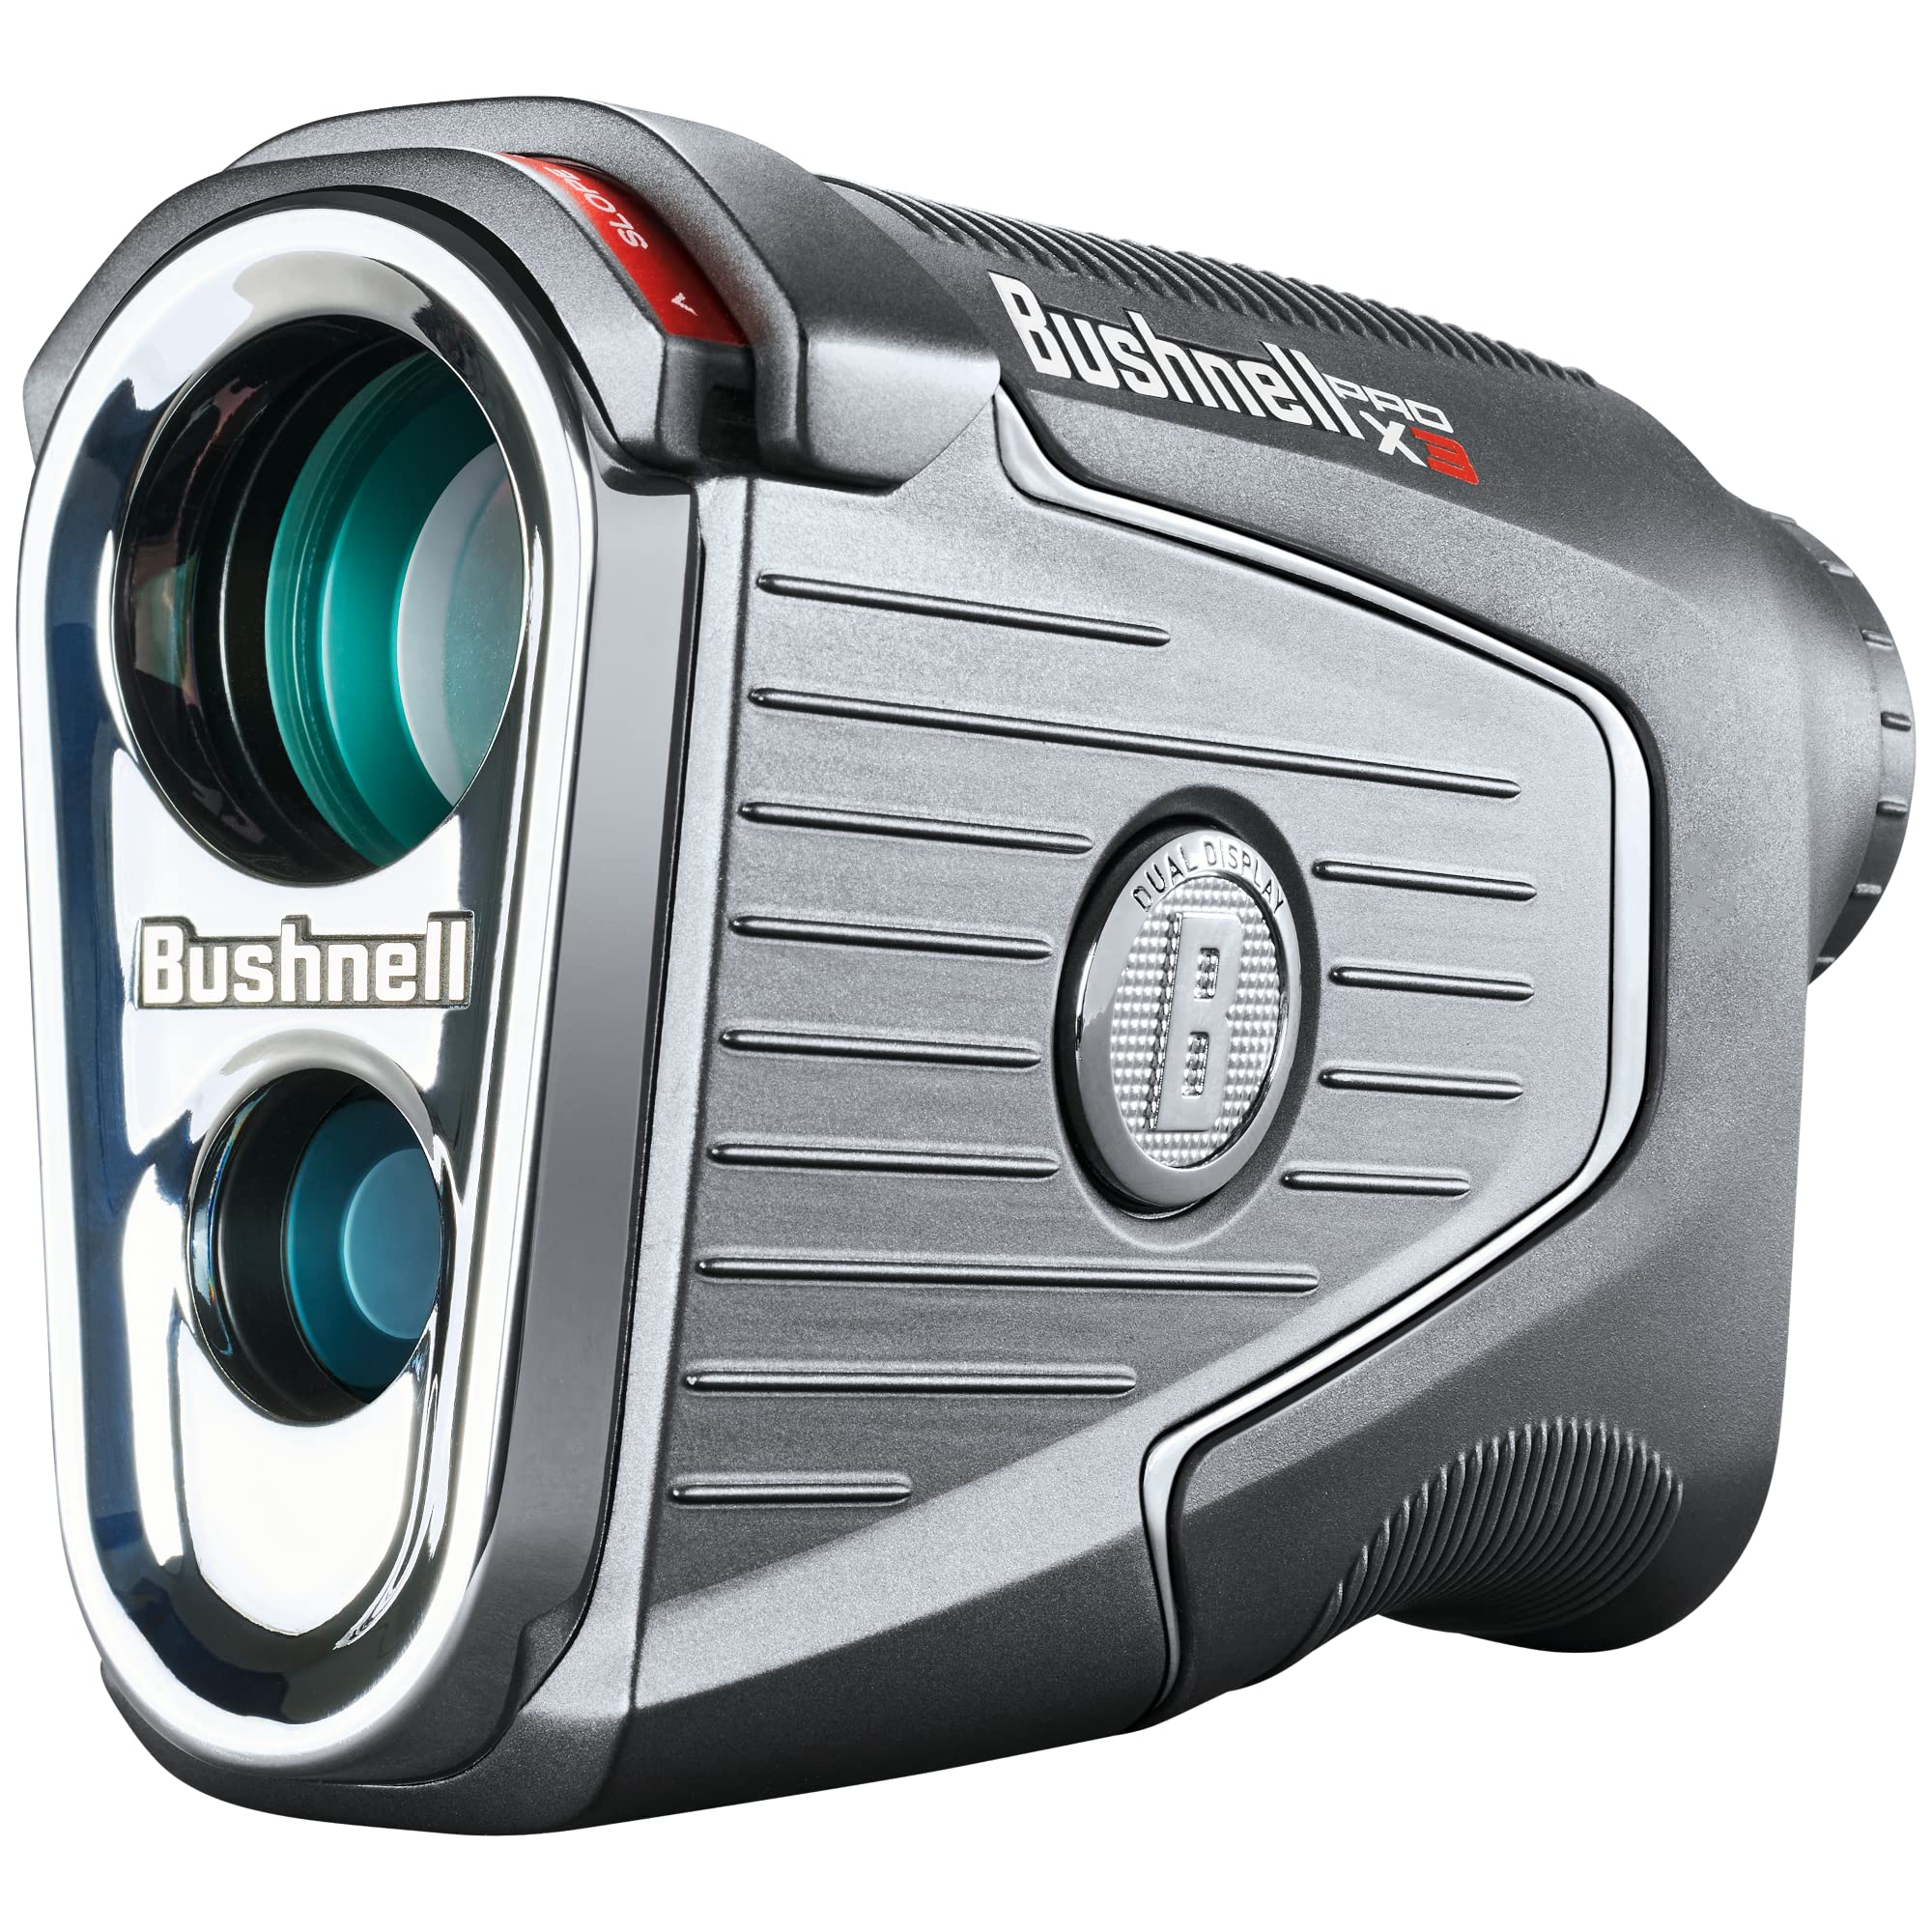 Bushnell Golf Pro X3 Golf Laser Rangefinder, Waterproof, Slope + Elements Compensation, Locking Slope Switch, Dual Display, Bite Magnet Mount